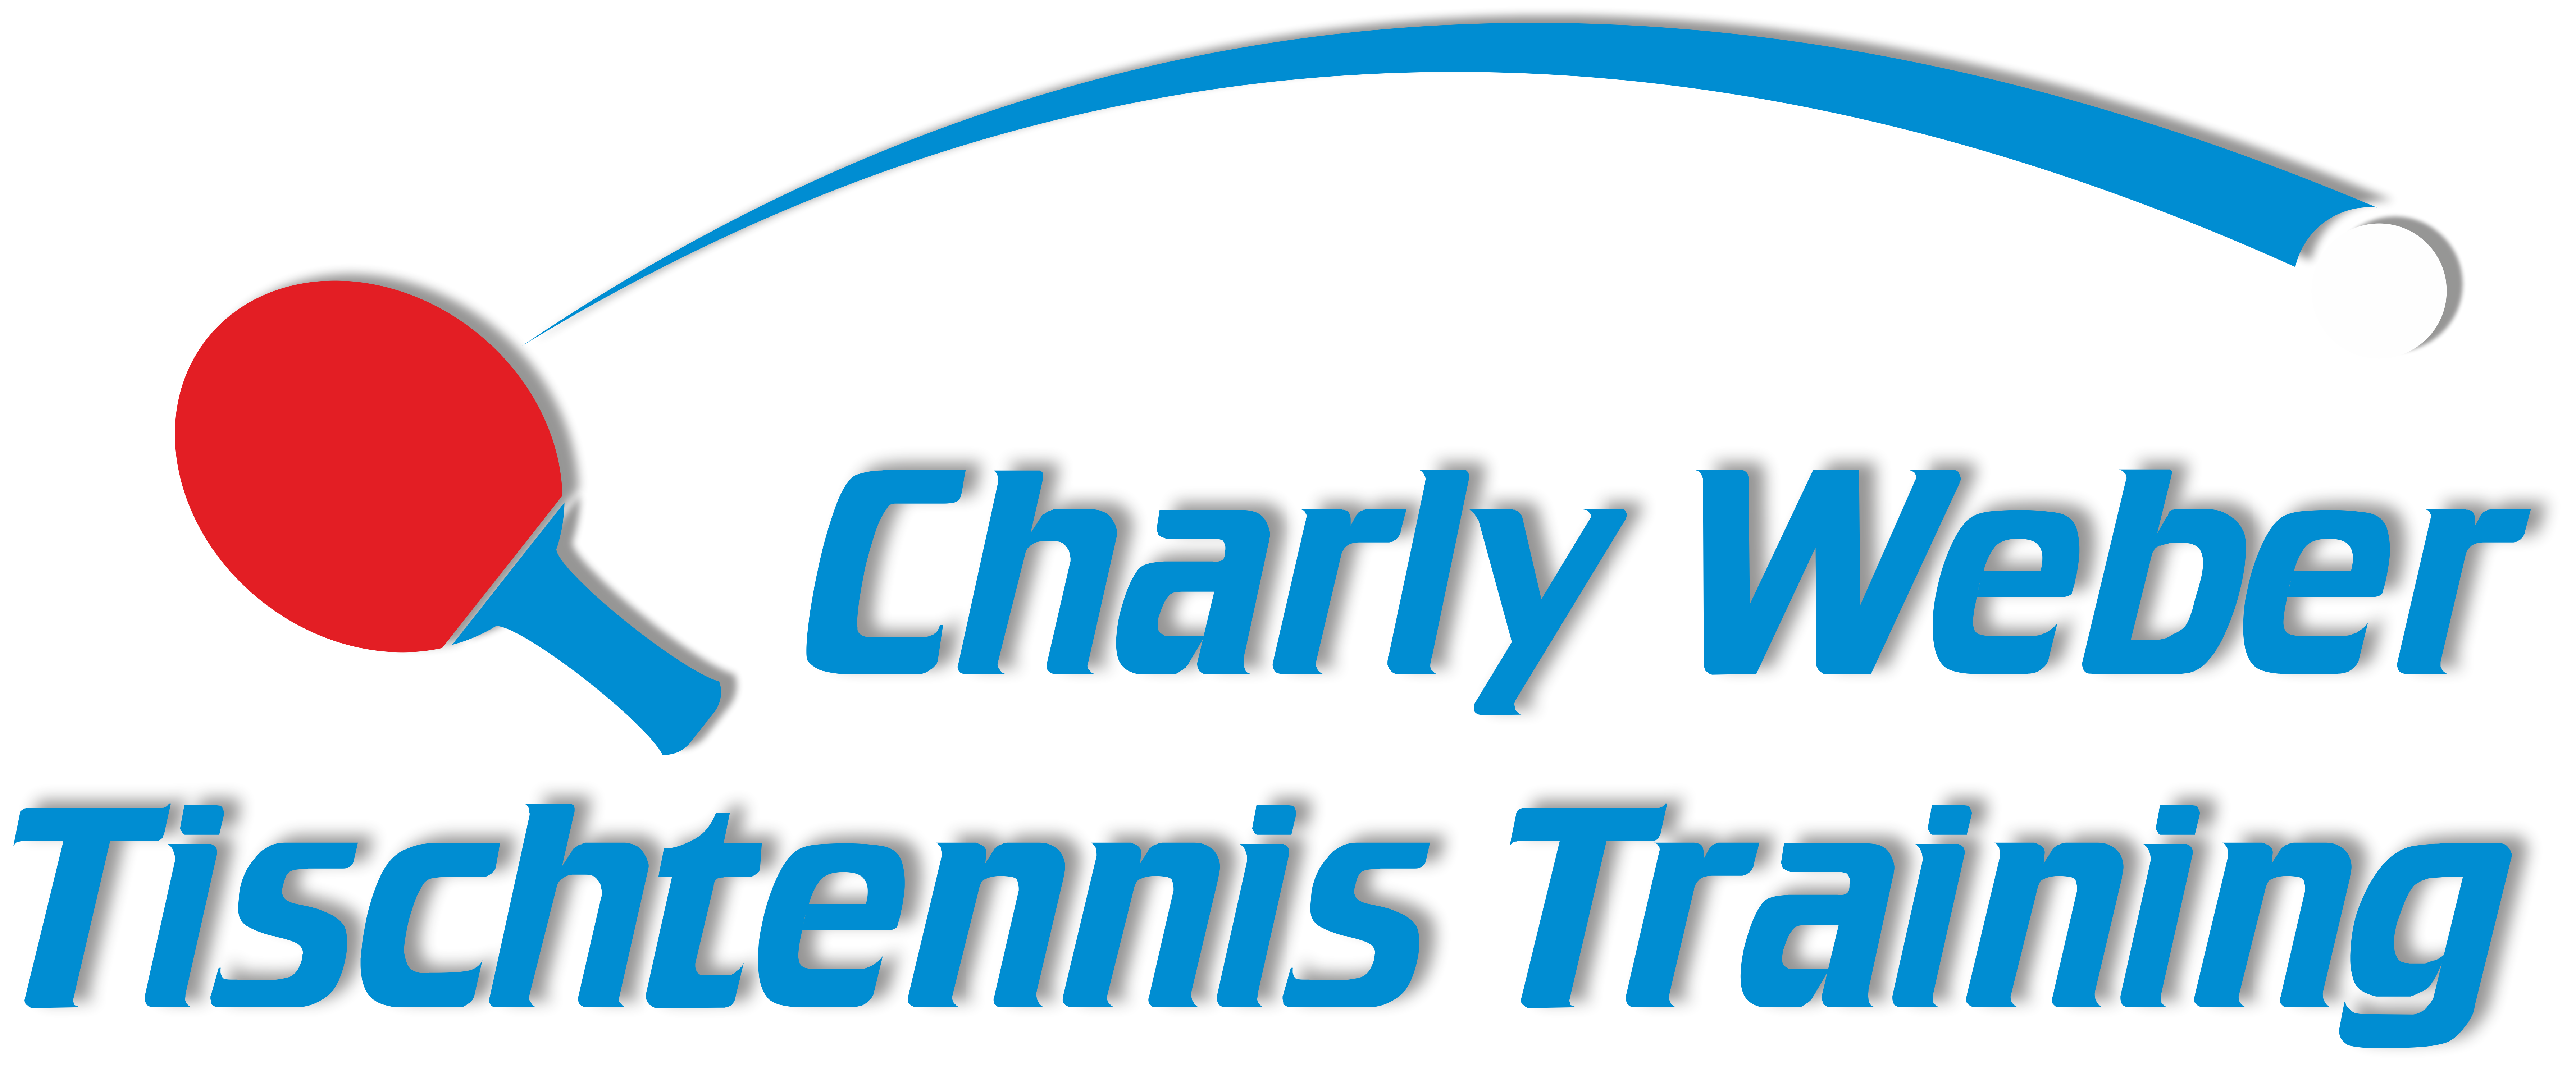 Charly Weber Tischtennis Training